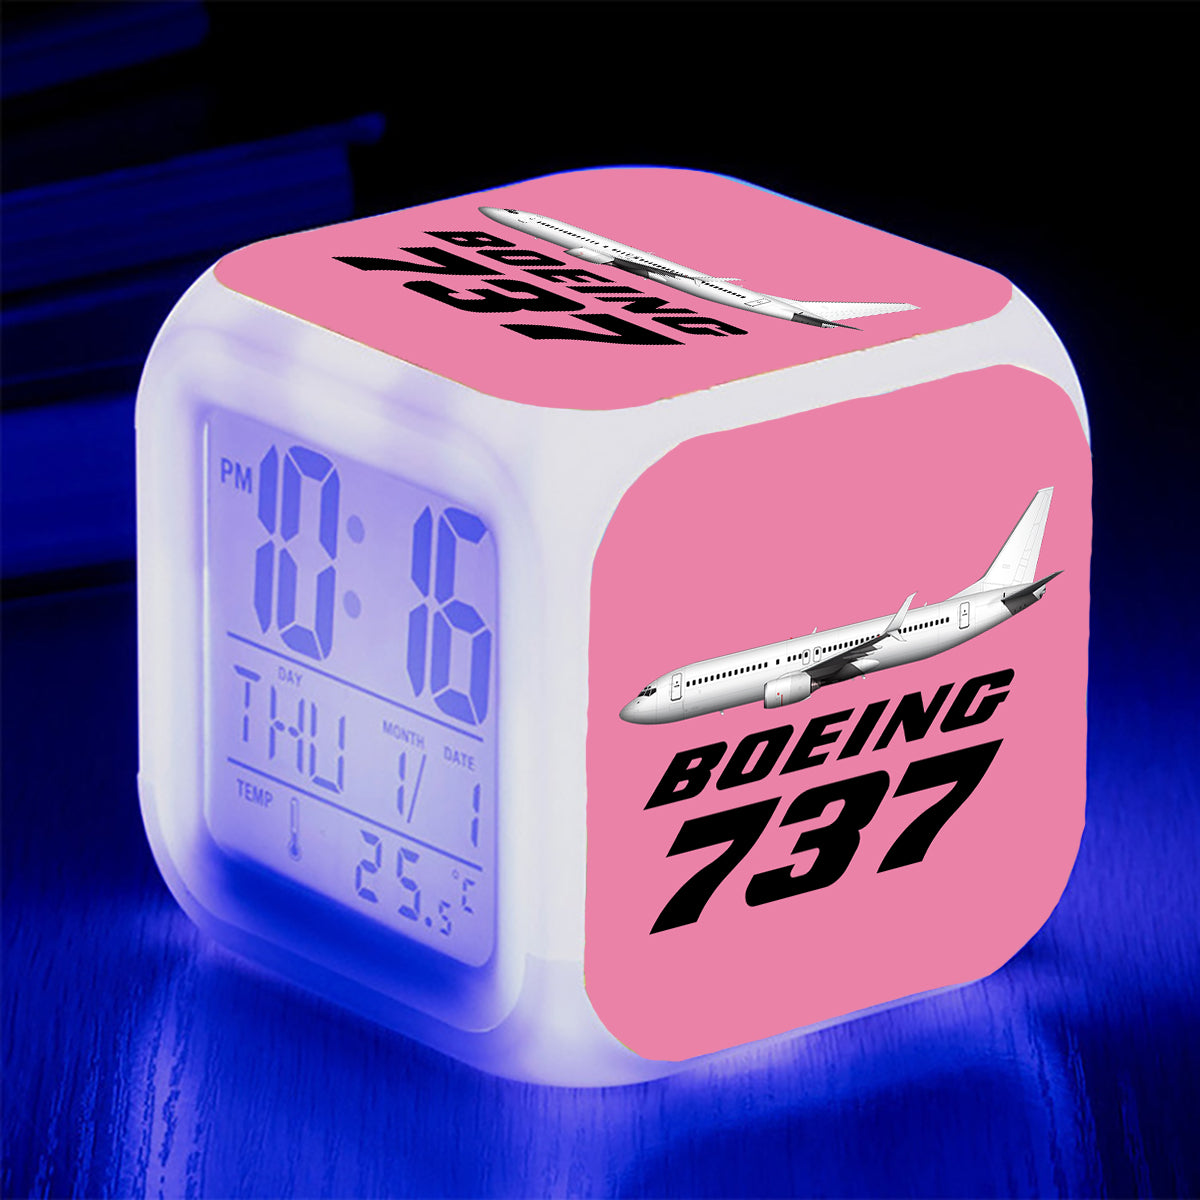 The Boeing 737 Designed "7 Colour" Digital Alarm Clock